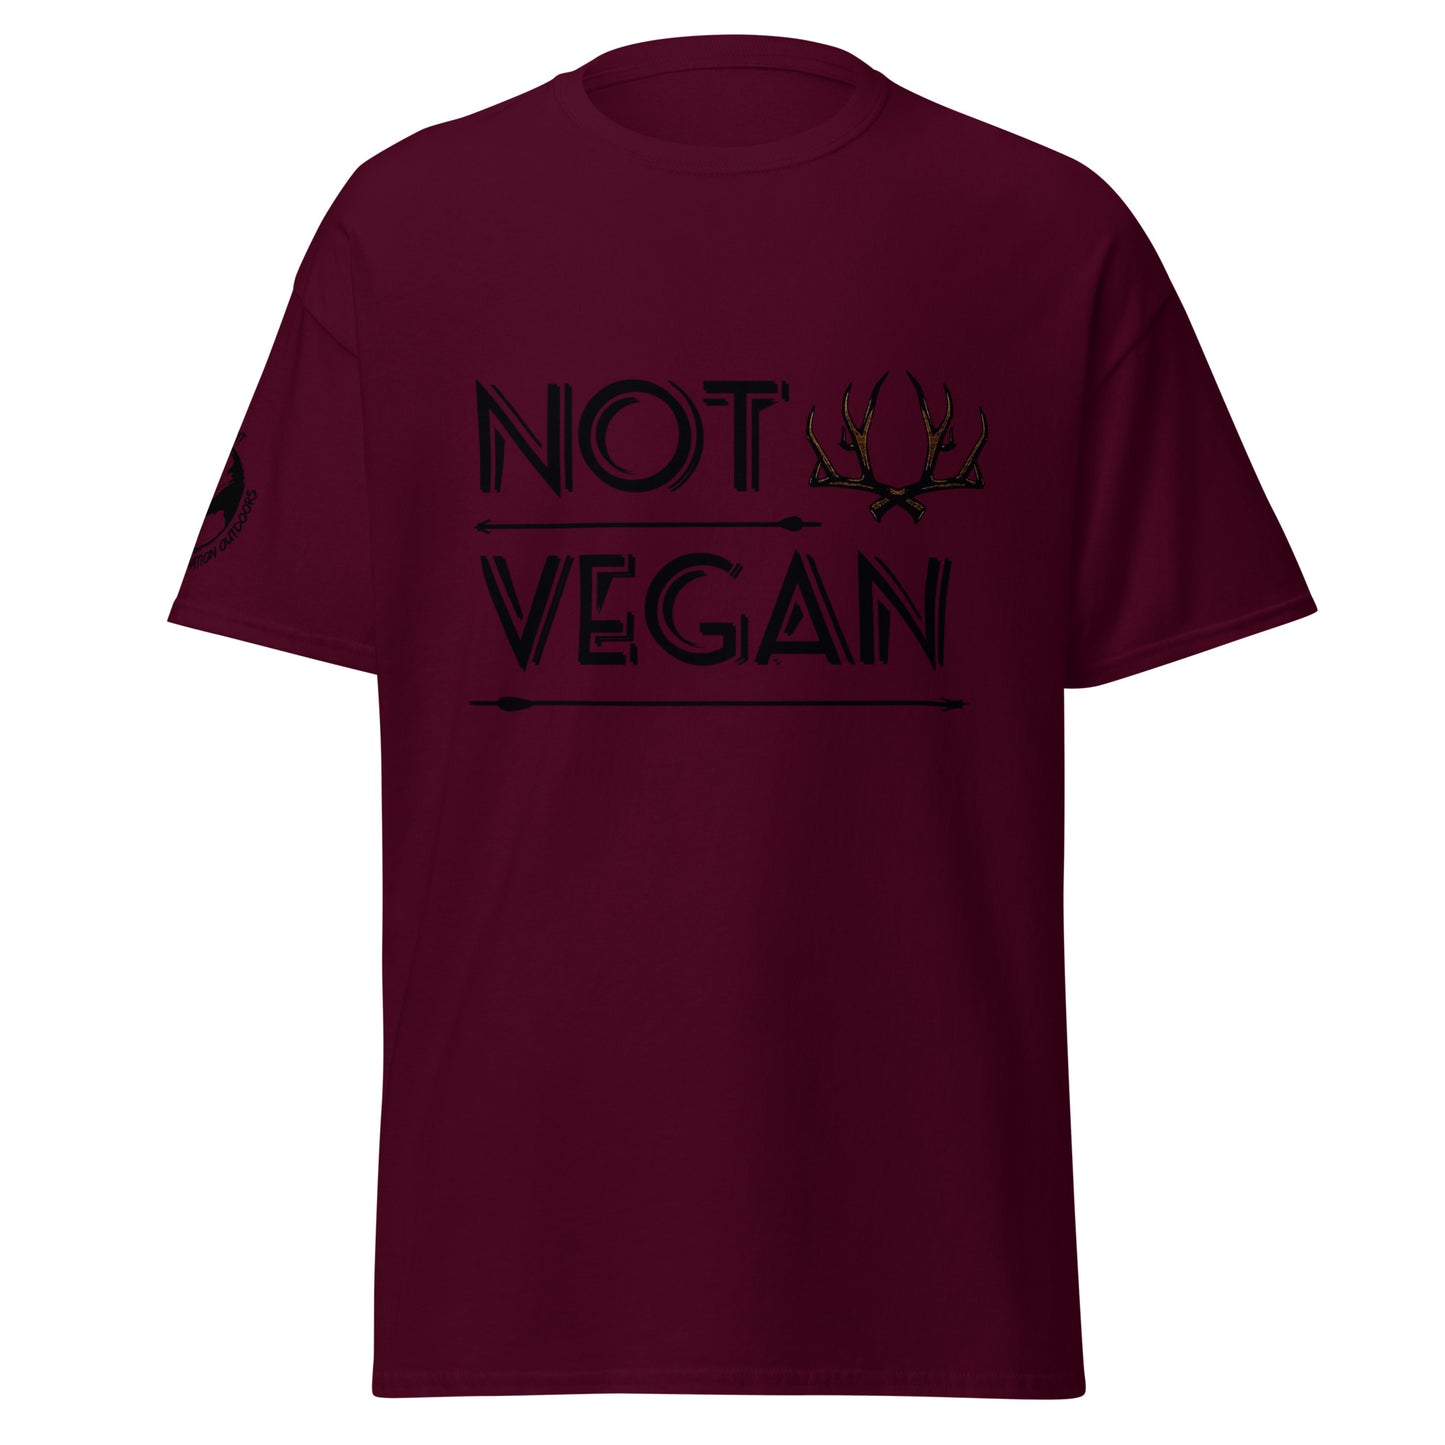 "Not Vegan" Unisex classic tee